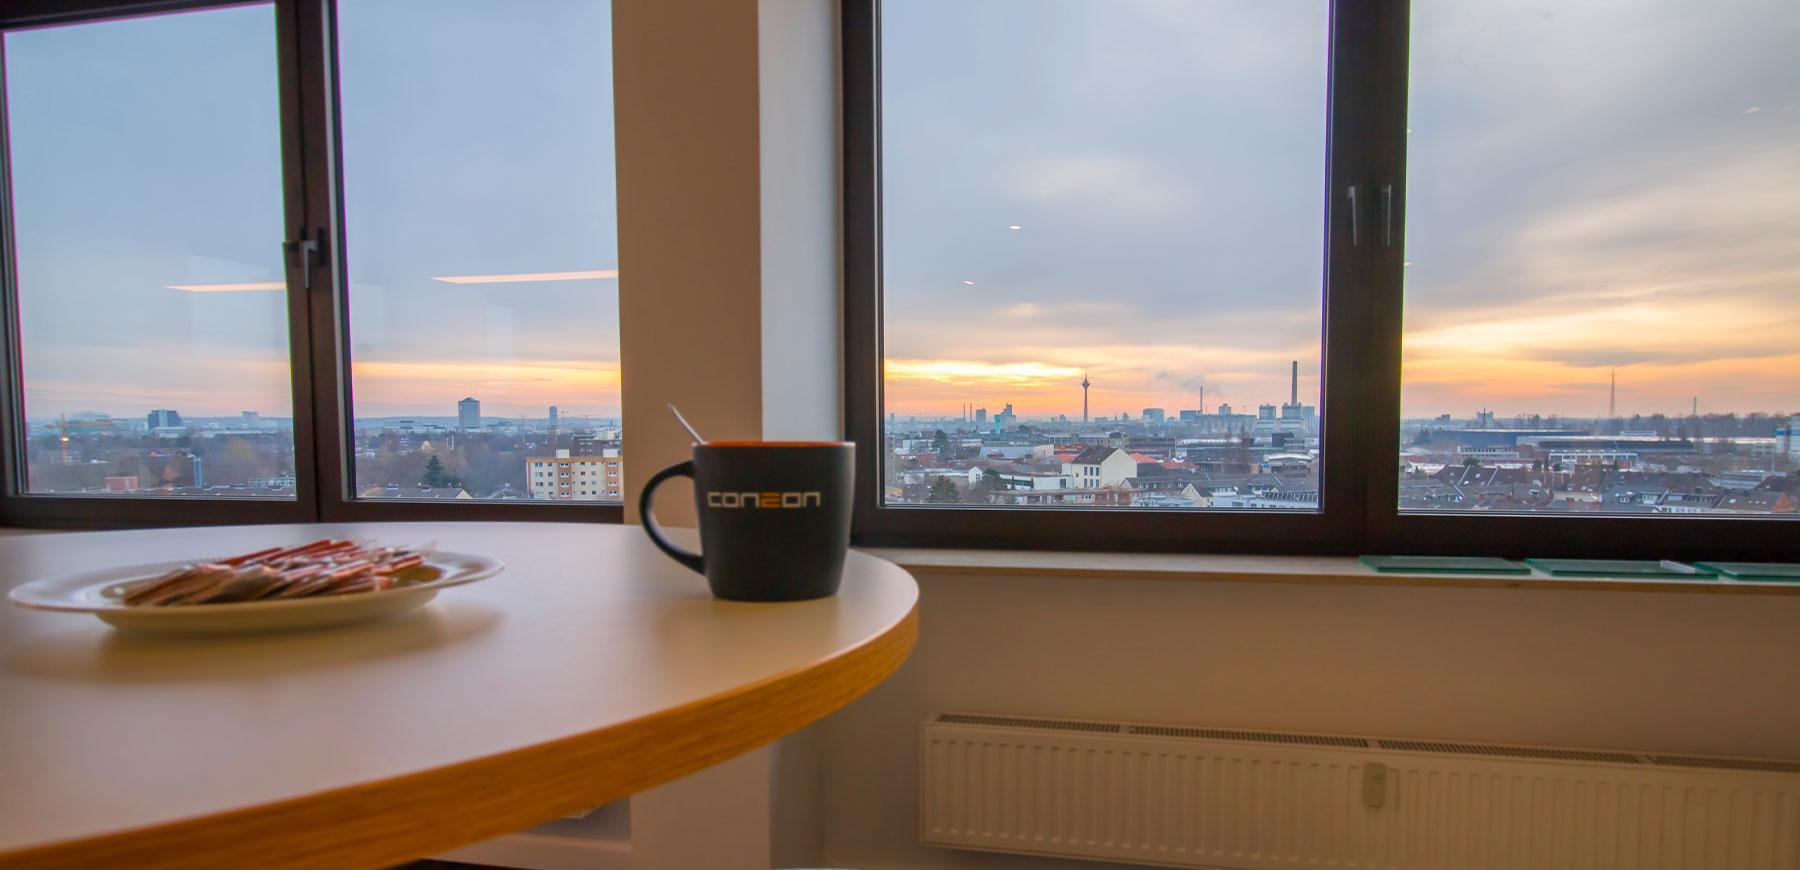 Eine Coneon-Tasse und ein weißer Teller auf einem Holztisch mit Fenstern und Blick auf die Stadt im Hintergrund.